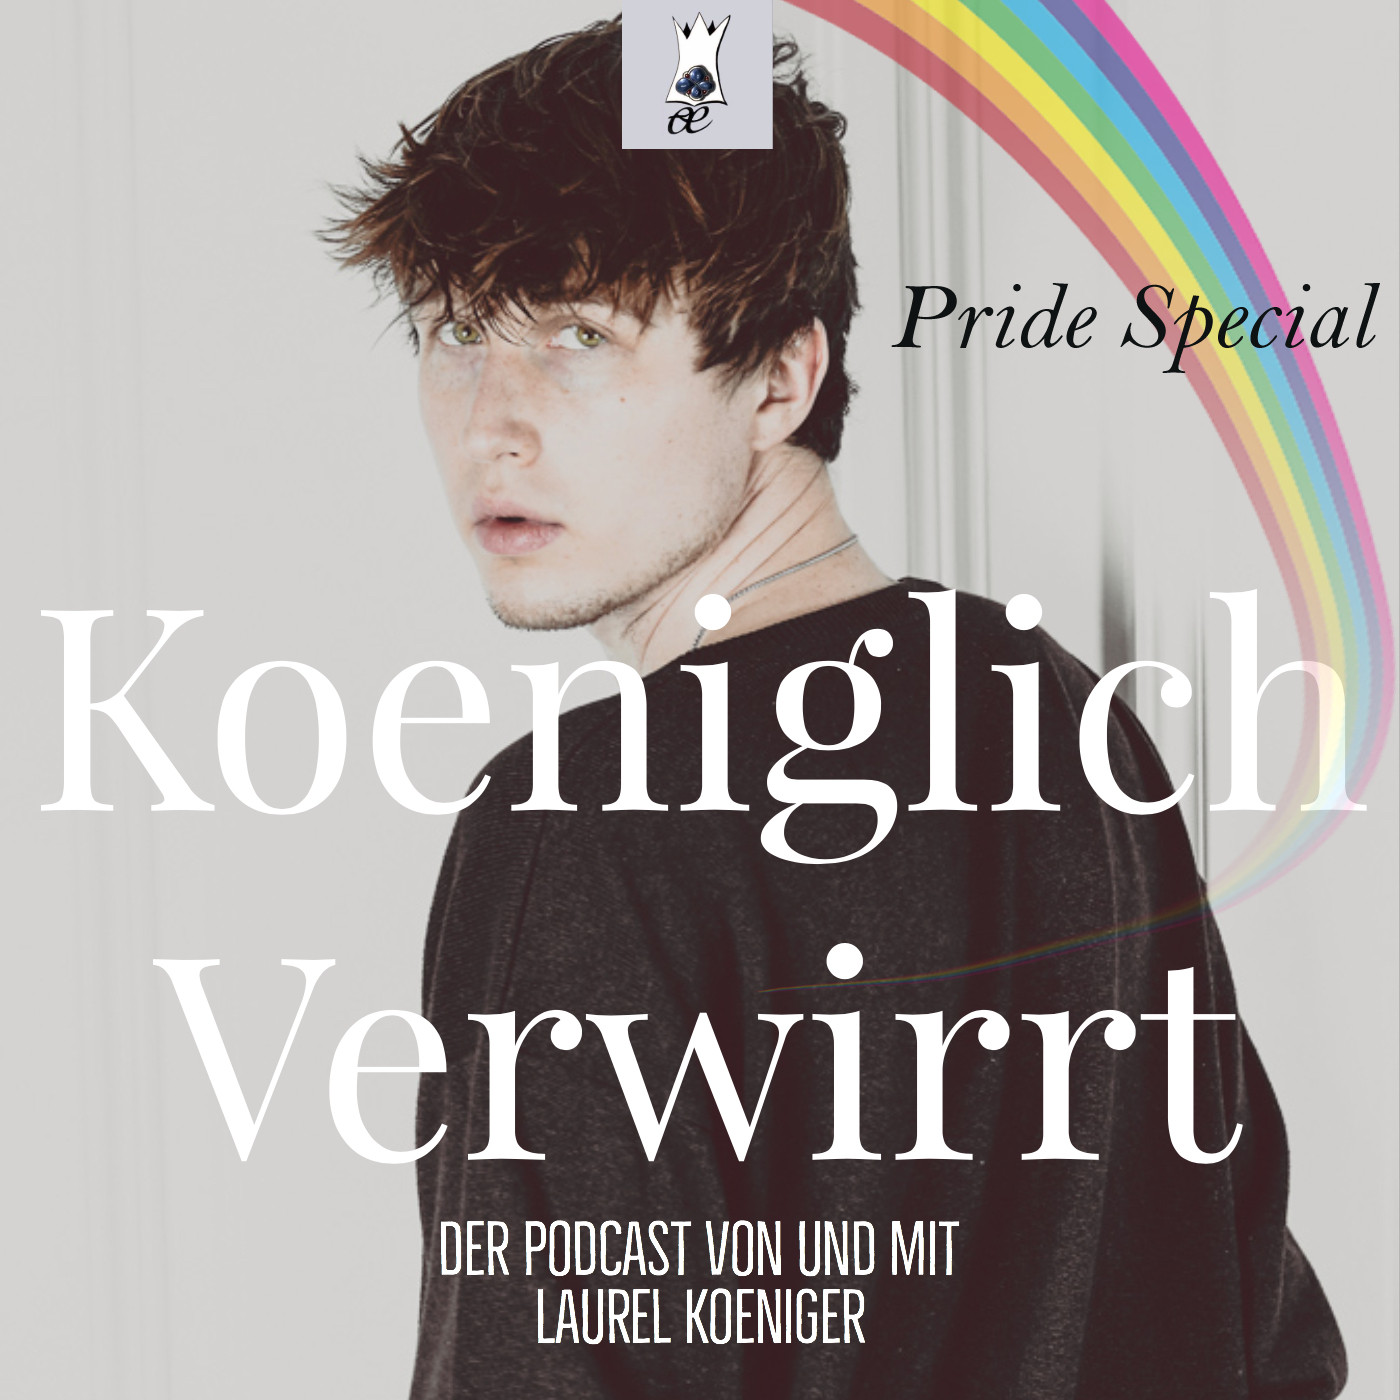 Der richtige Umgang mit der LGBT+-Community zum Europride | KOENIGLICH VERWIRRT Folge 28